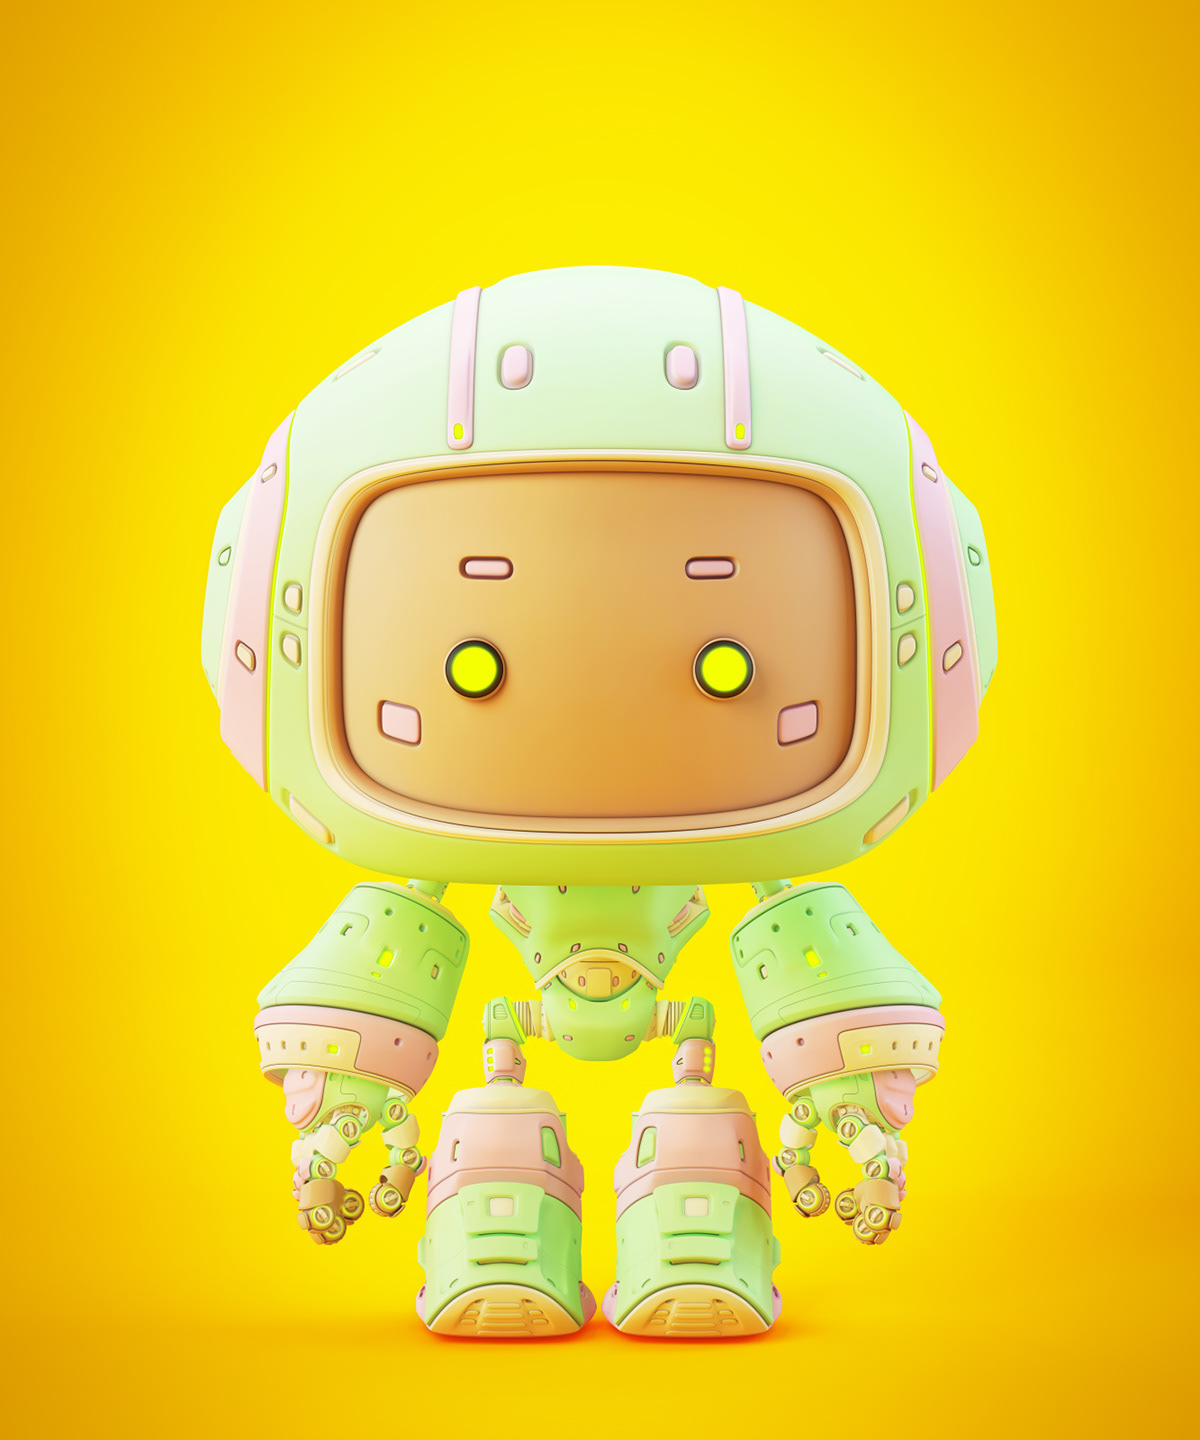 gummybot超可爱的机器人萌化你的心